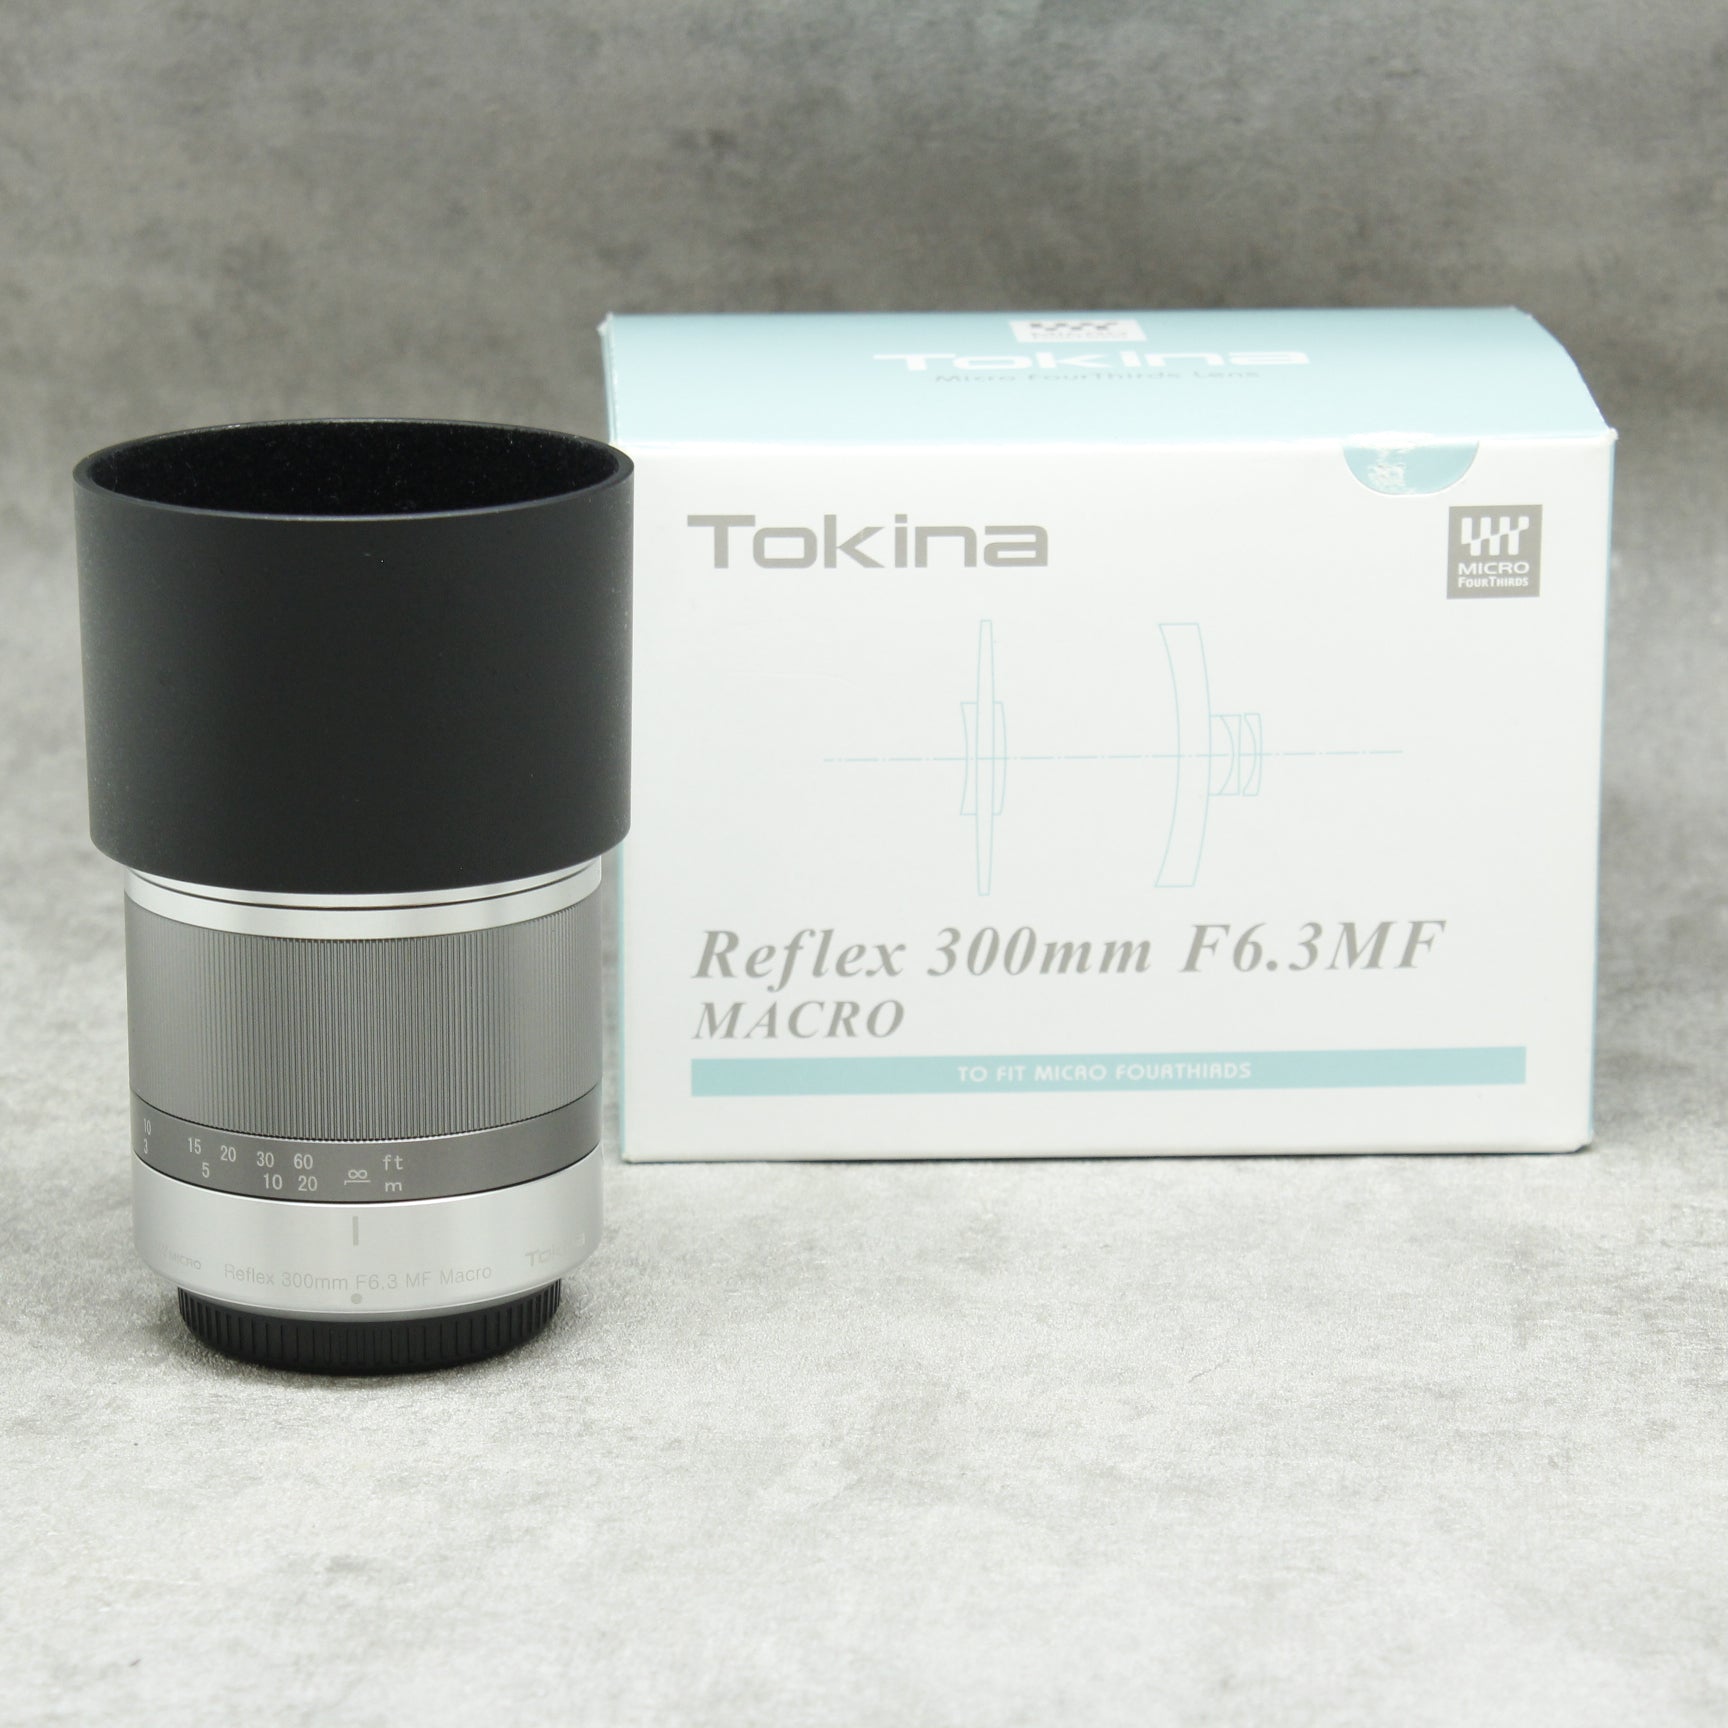 【正価】トキナー レフレックス 300mm F6.3 MF MACRO レンズ(単焦点)